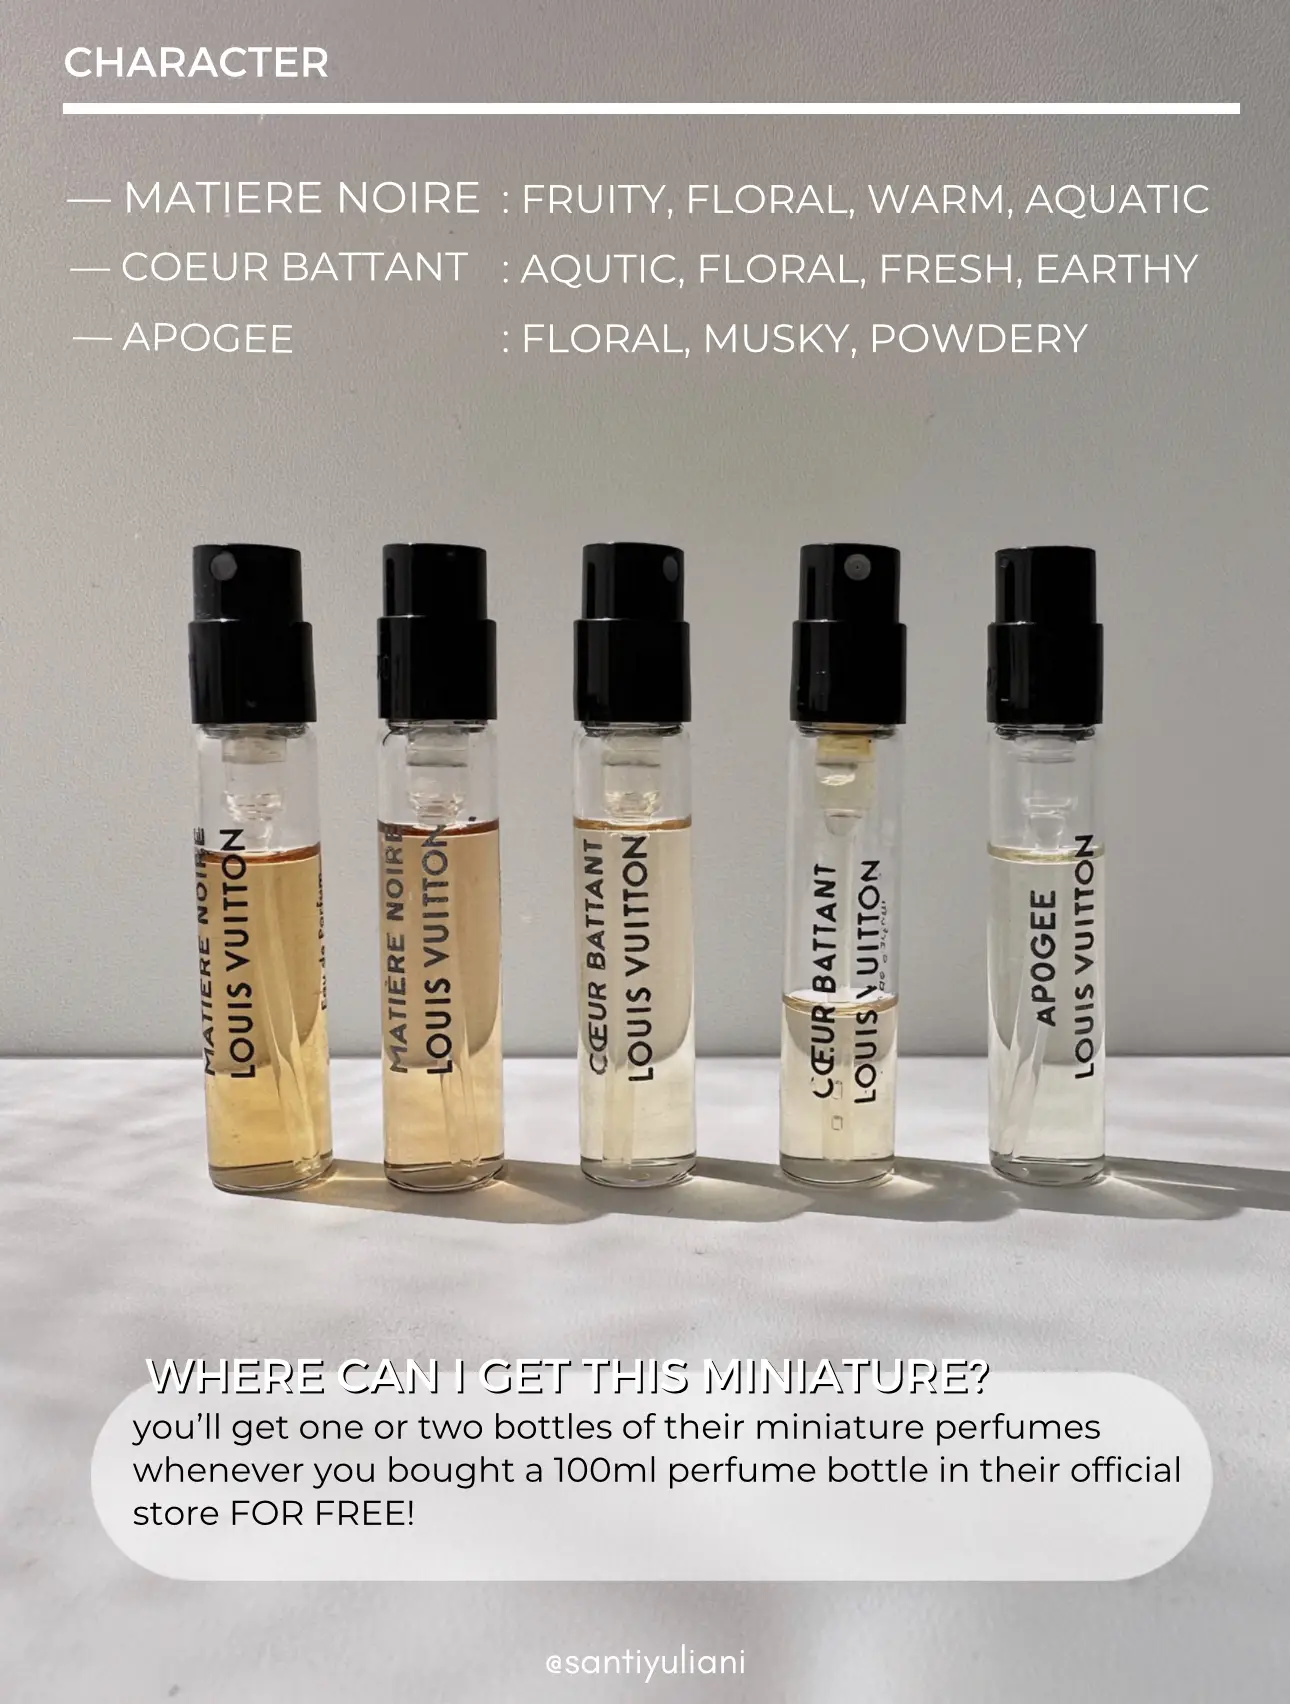 Louis Vuitton Perfume Collection For Women Sample Vials Spray 2ml